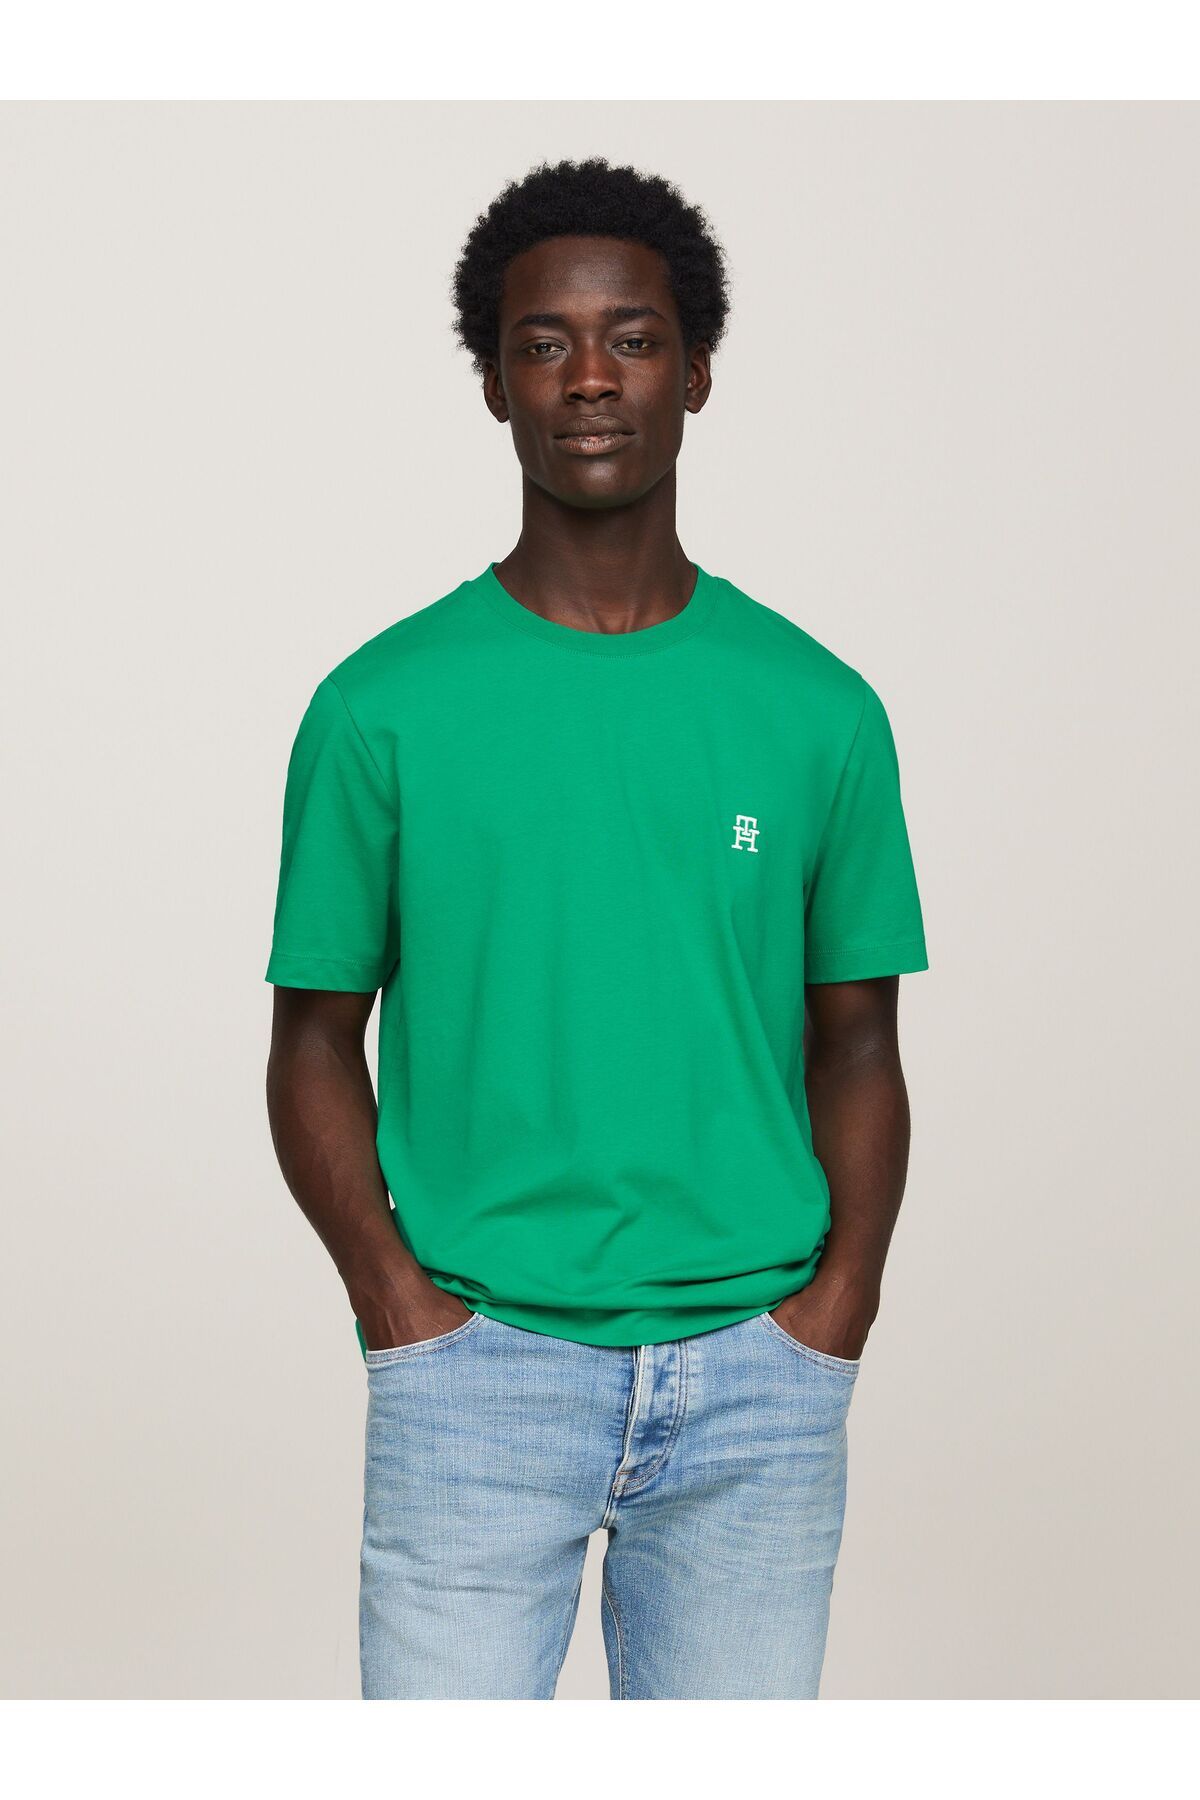 Tommy Hilfiger Erkek Dokuma Kumaş Kısa Kol Düz Model Yeşil T-Shirt MW0MW33987-L4B